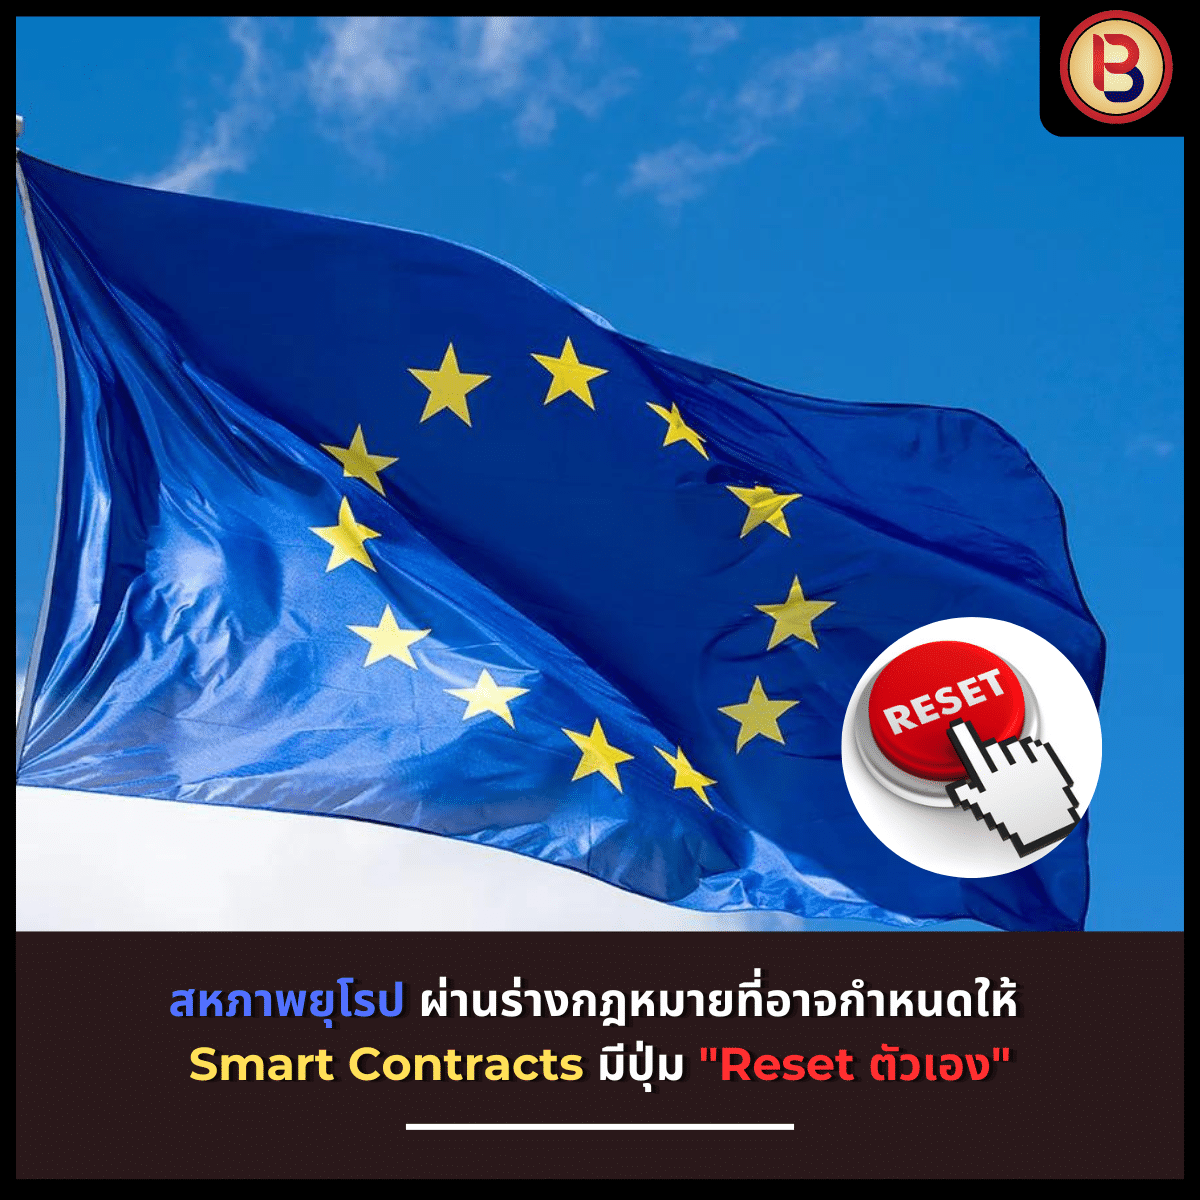 สหภาพยุโรป ผ่านร่างกฎหมายที่อาจกำหนดให้ Smart Contracts มีปุ่ม “Reset ตัวเอง”